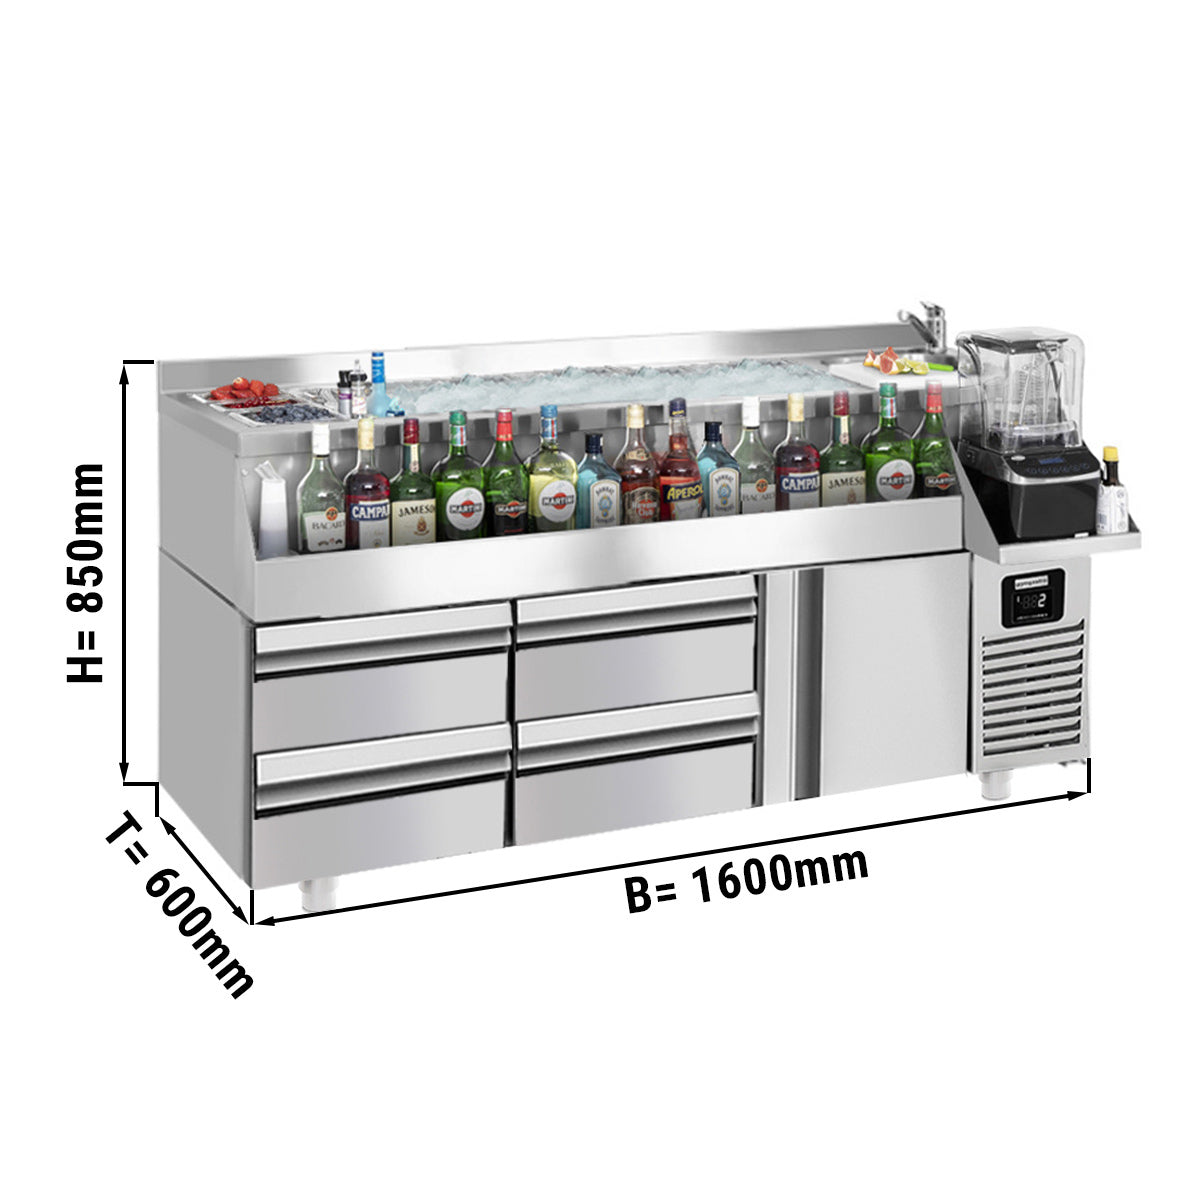 Хладилна маса за бар / напитки - 1,6 х 0,6 м - 235 литра - с 1 врата, 2 чекмеджета 1/2 и рафтове